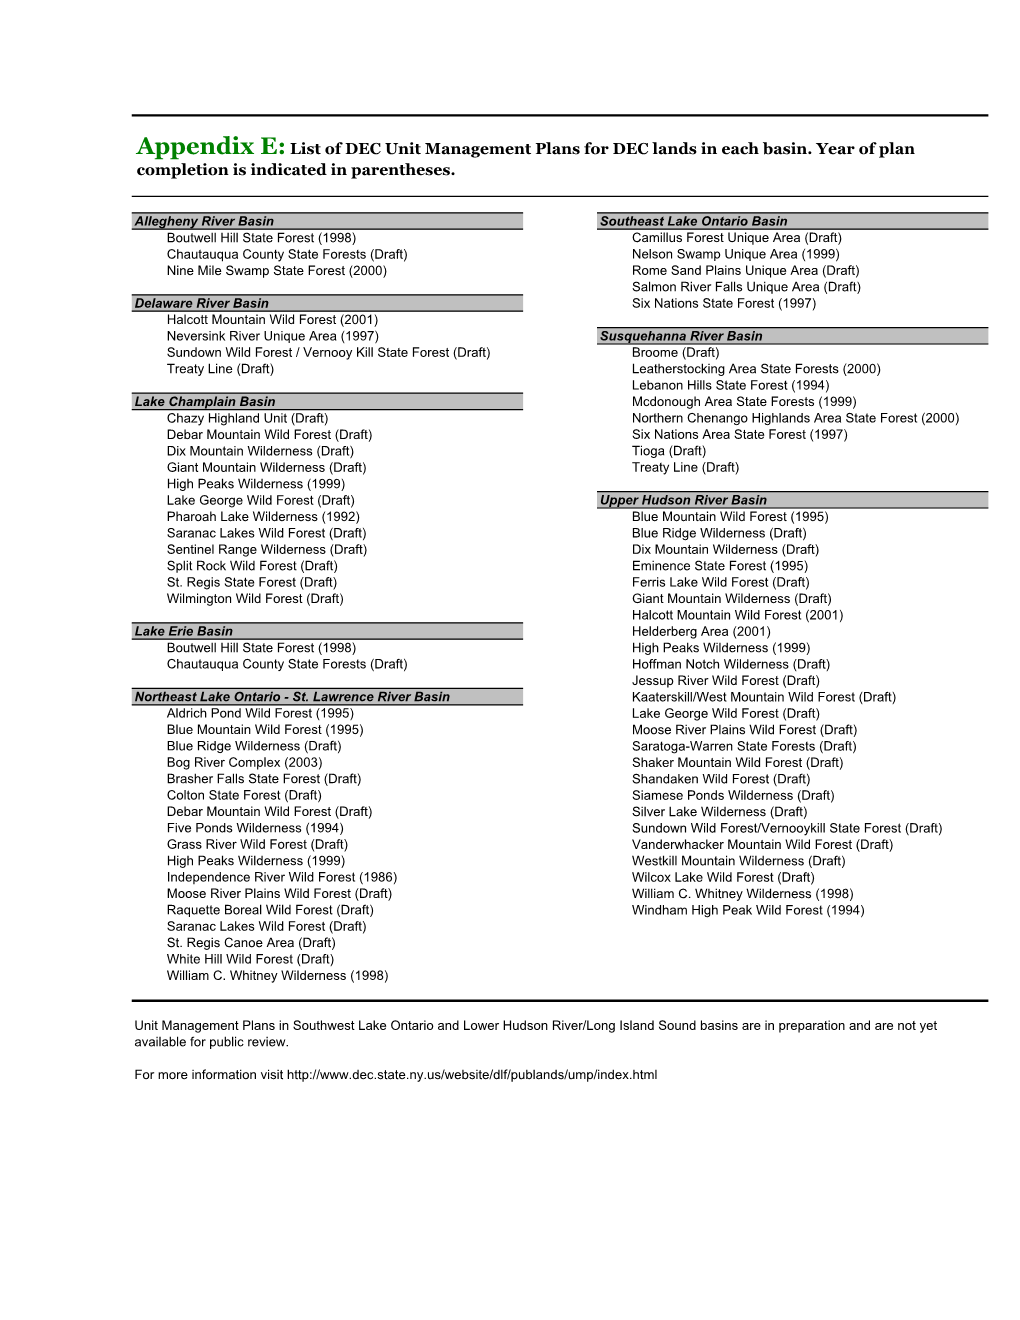 List of DEC Unit Management Plans and Rosters of Participants